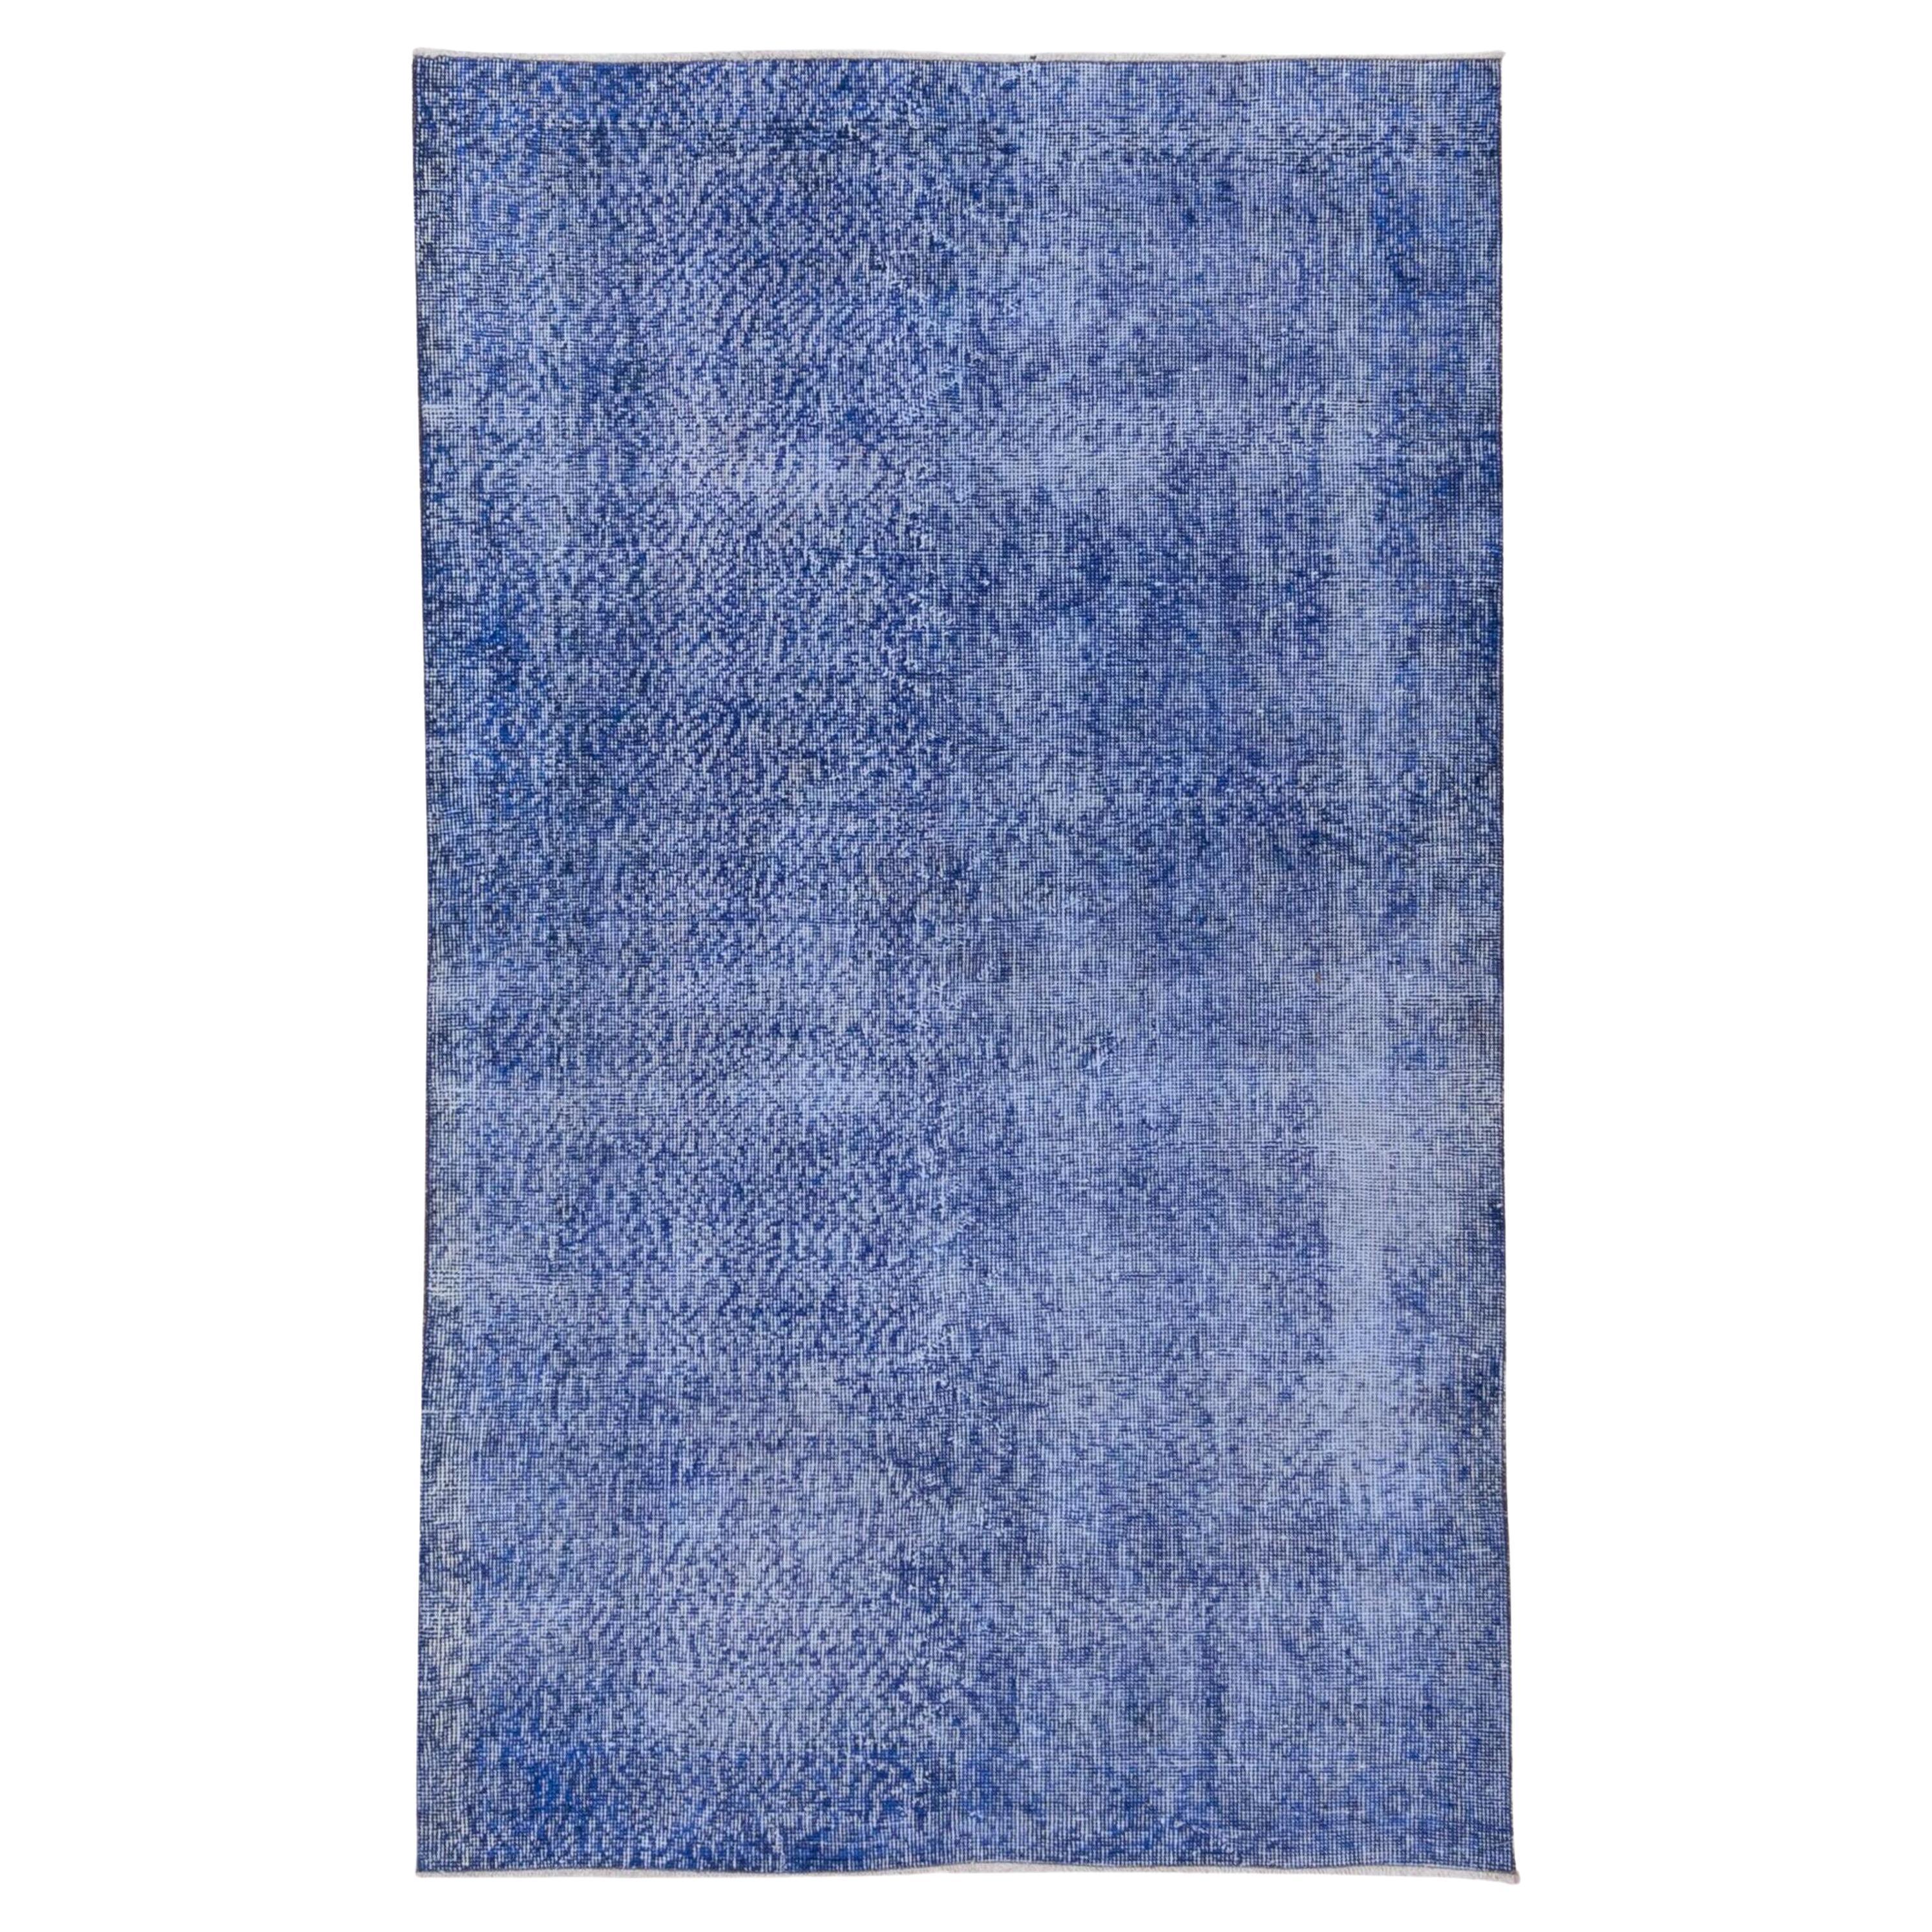 Blauer überzogener Sparta-Teppich aus Denim mit indigoblauen Akzenten